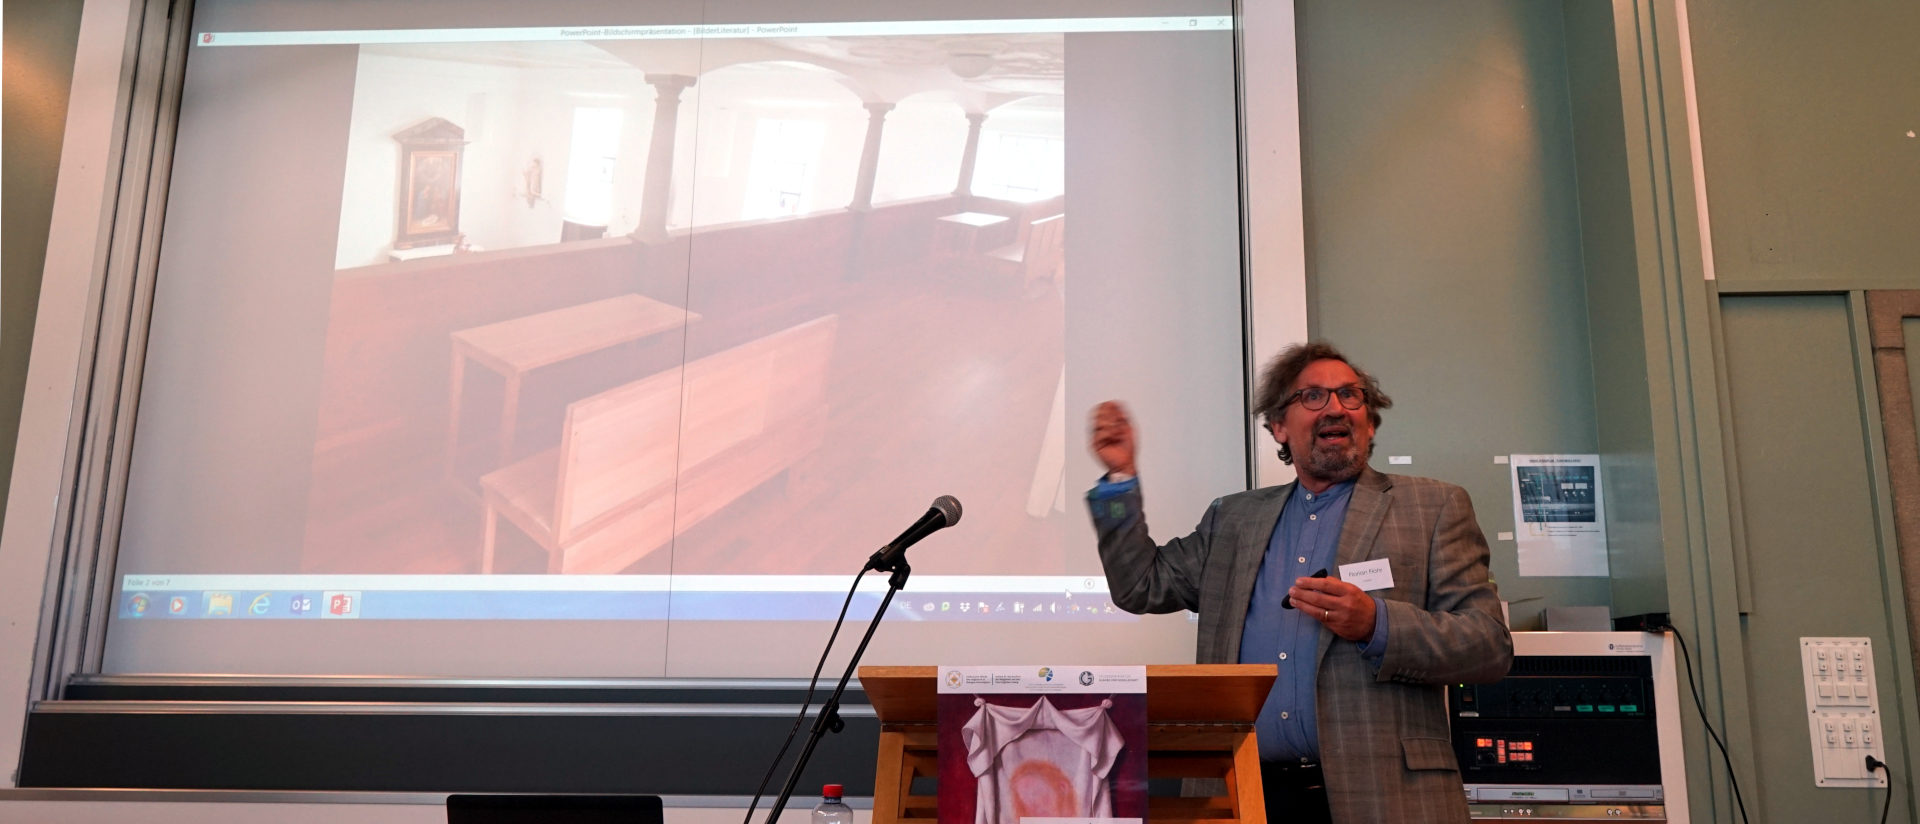 Florian Flohr erklärt Prinzip der Studierplätze in der Peterskappelle